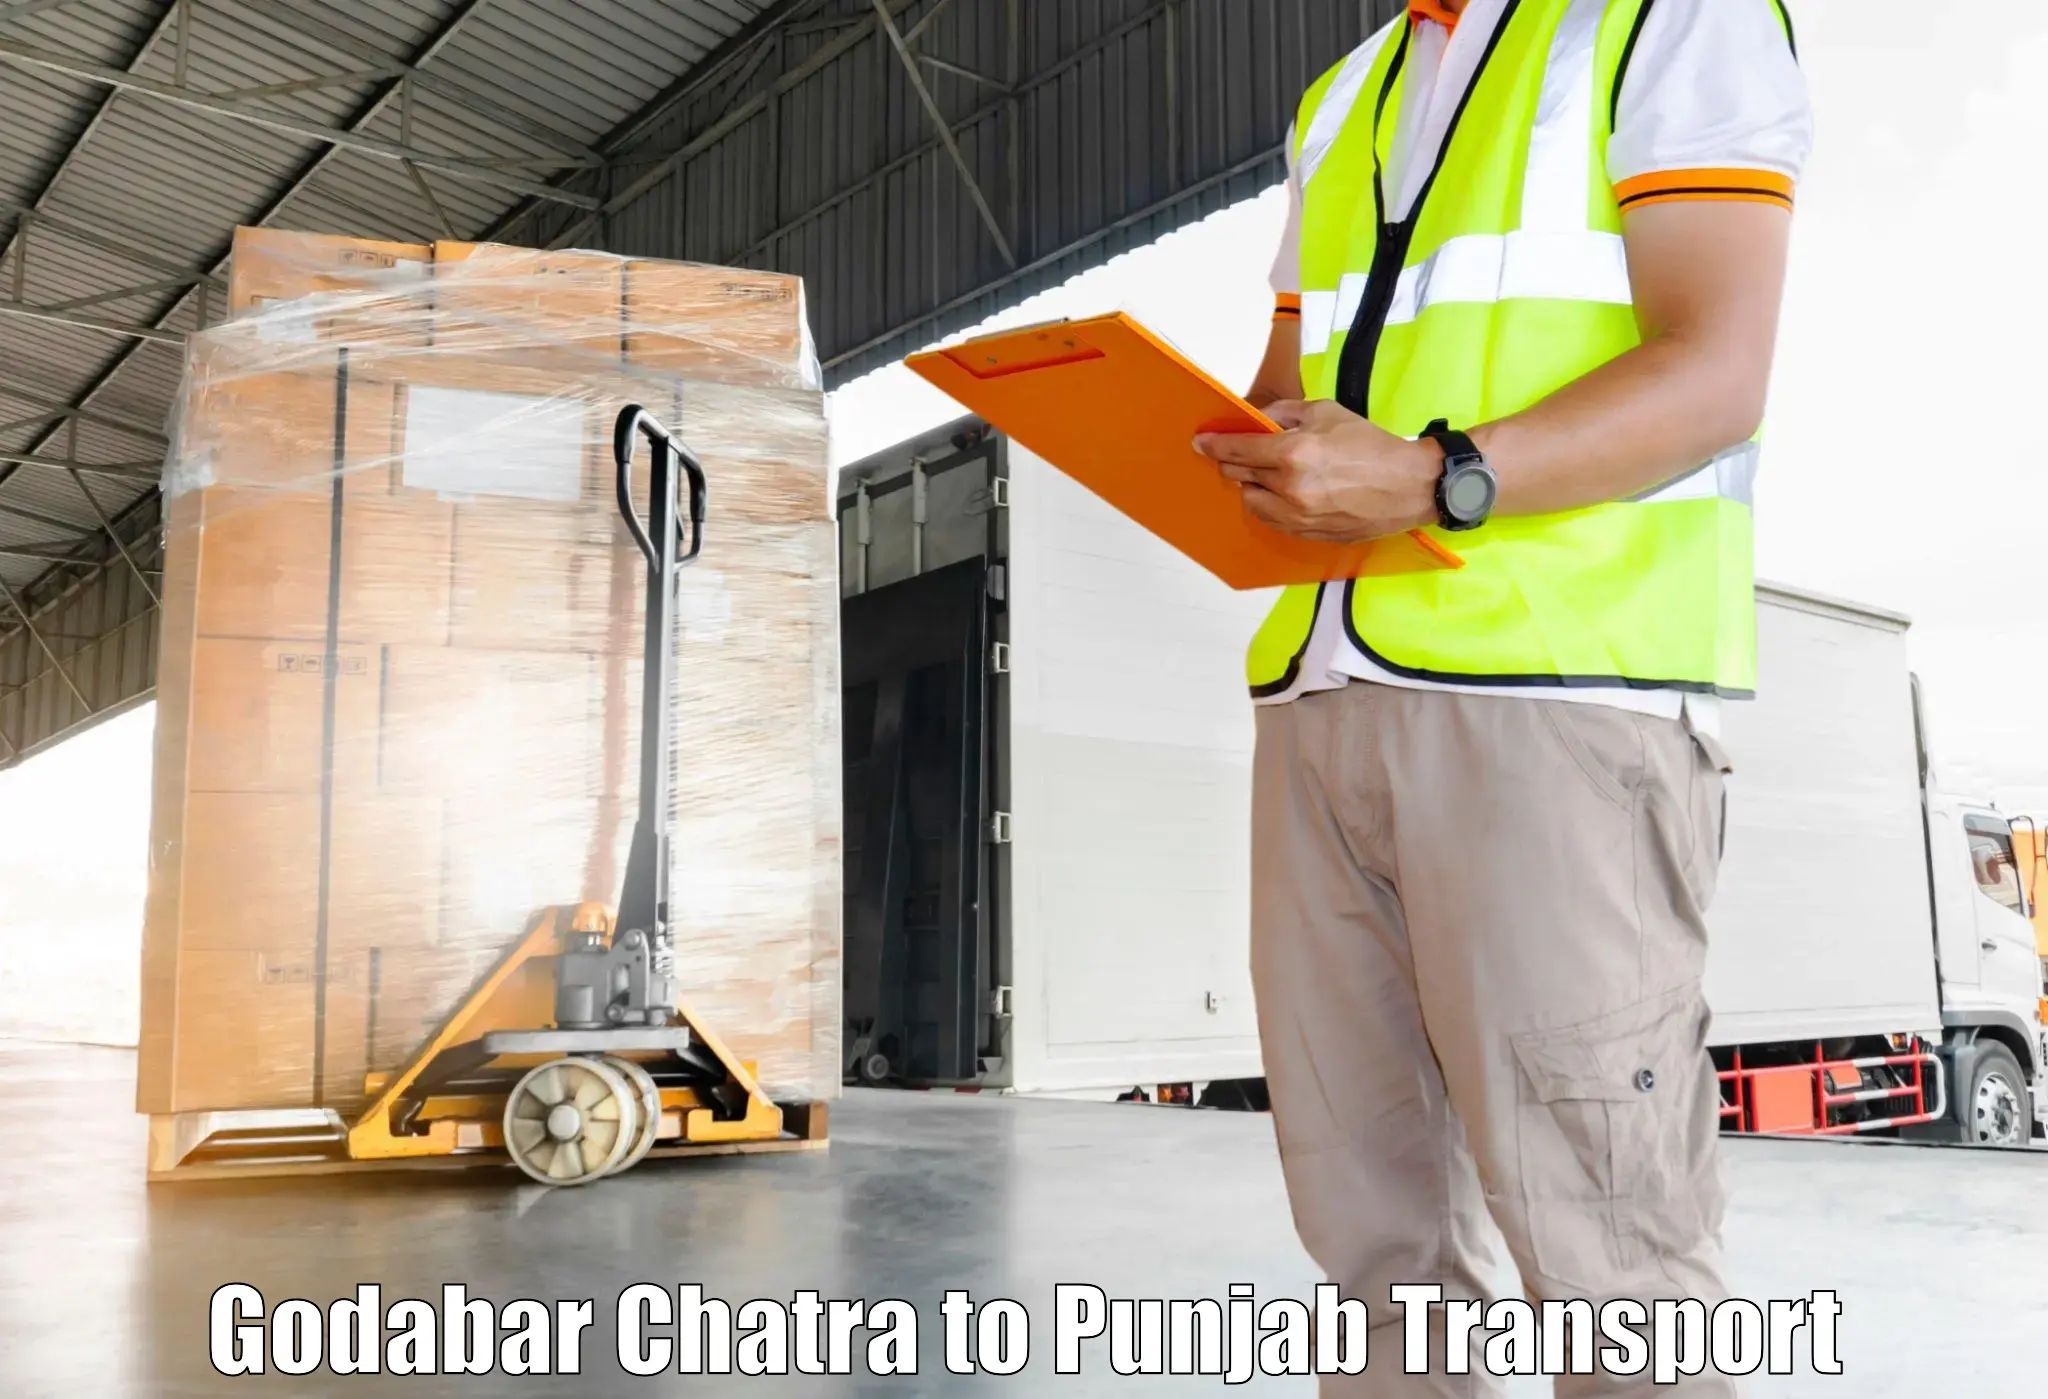 Shipping services Godabar Chatra to Batala